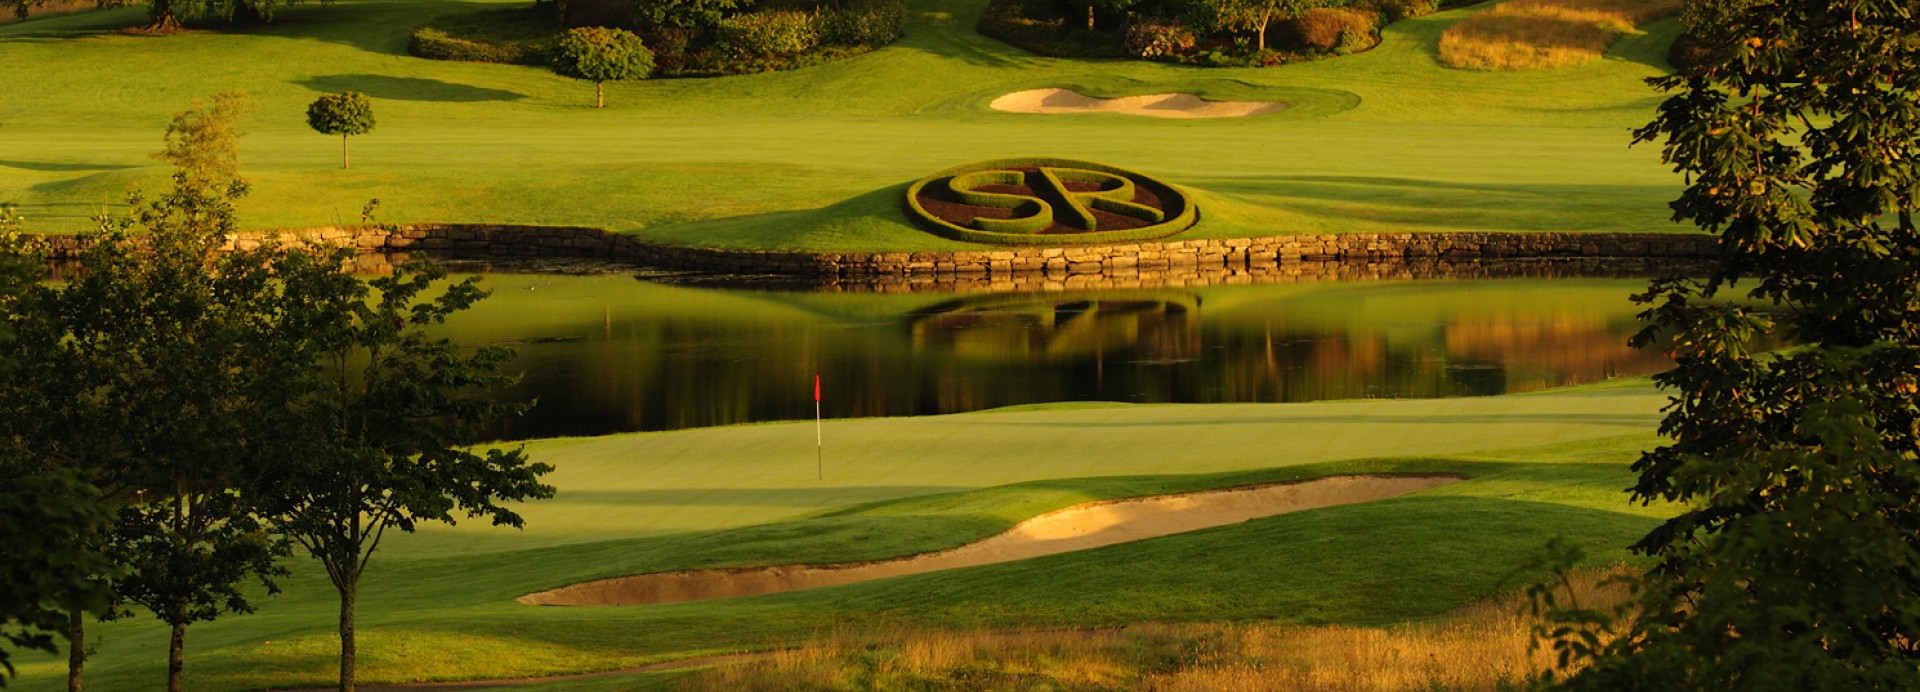 Slieve Russell Golf Club  | Golfové zájezdy, golfová dovolená, luxusní golf